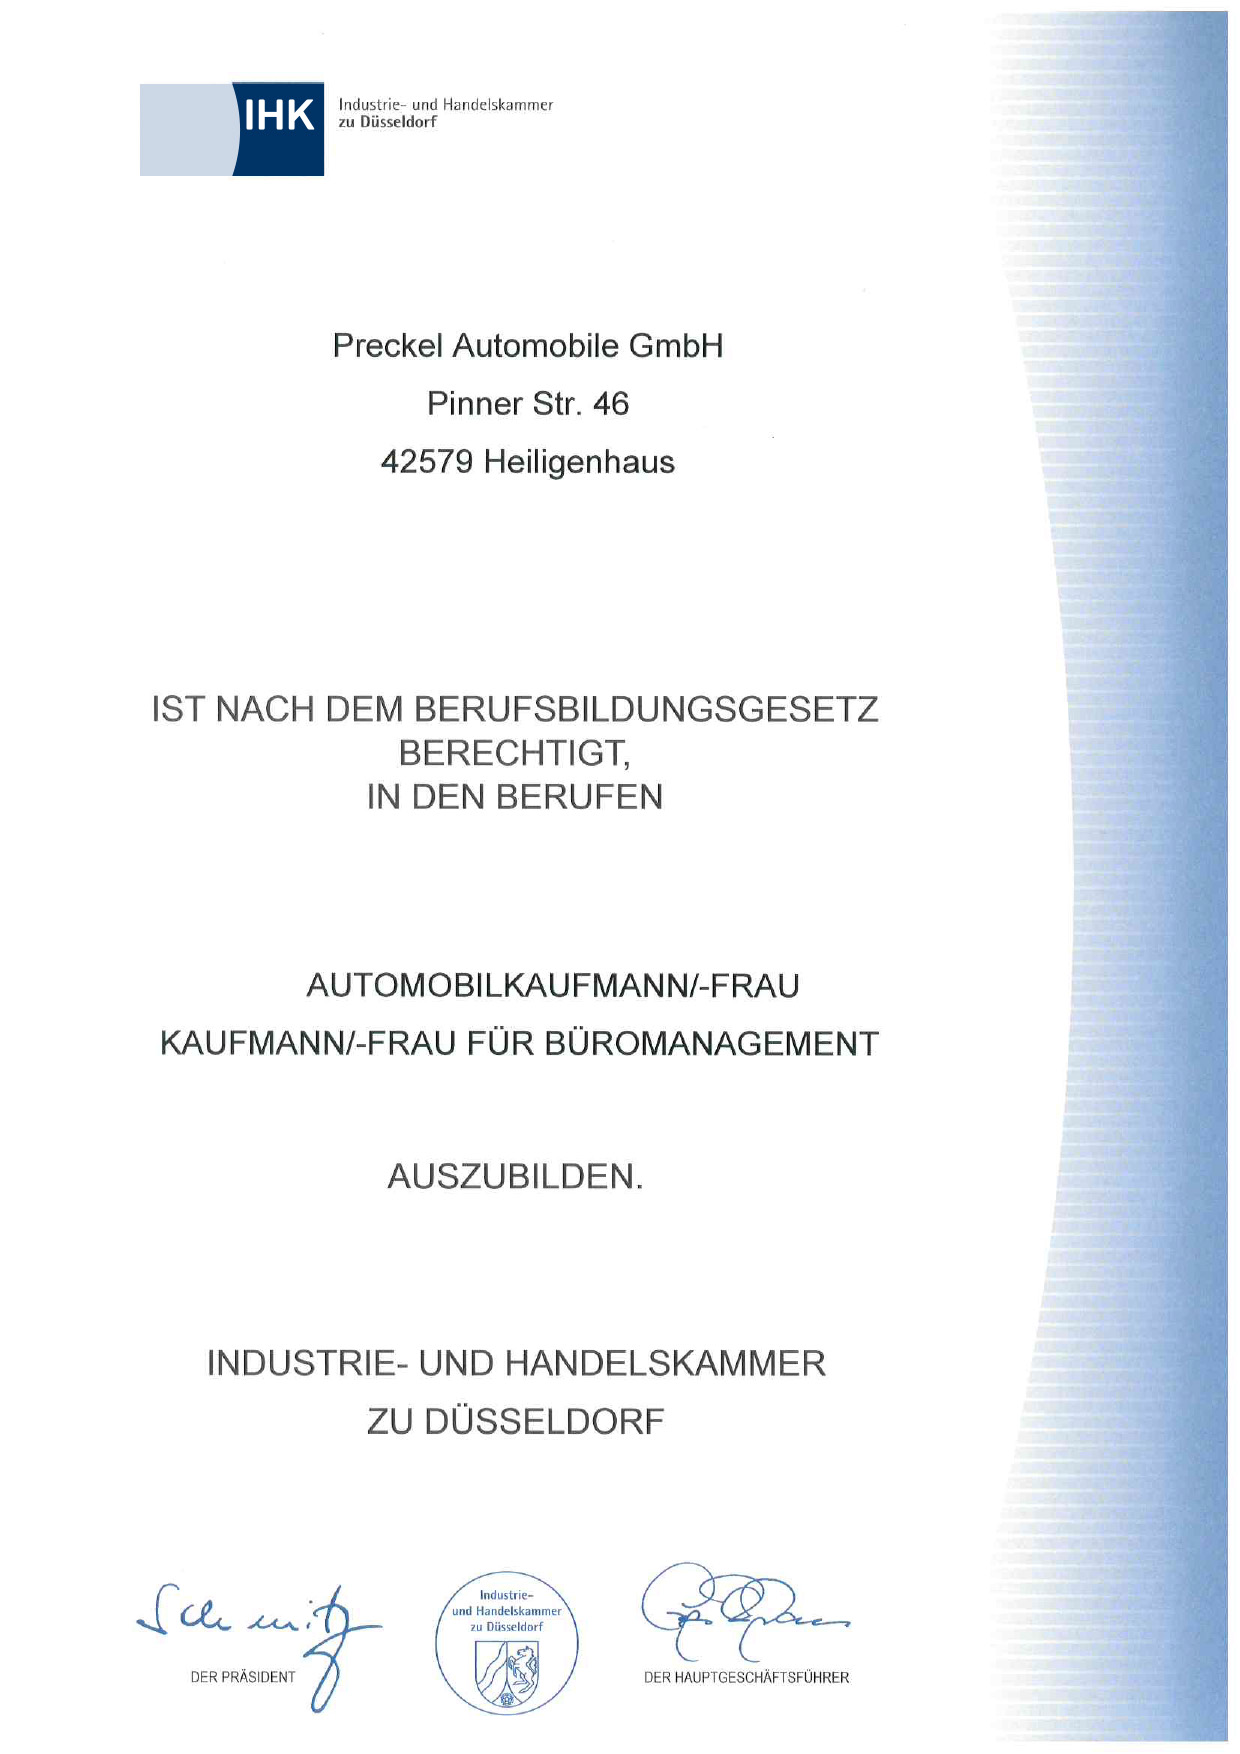 Preckel Automobile GmbH, Niederlassung Heiligenhaus ist anerkannter Ausbildungsbetrieb der IHK Düsseldorf.